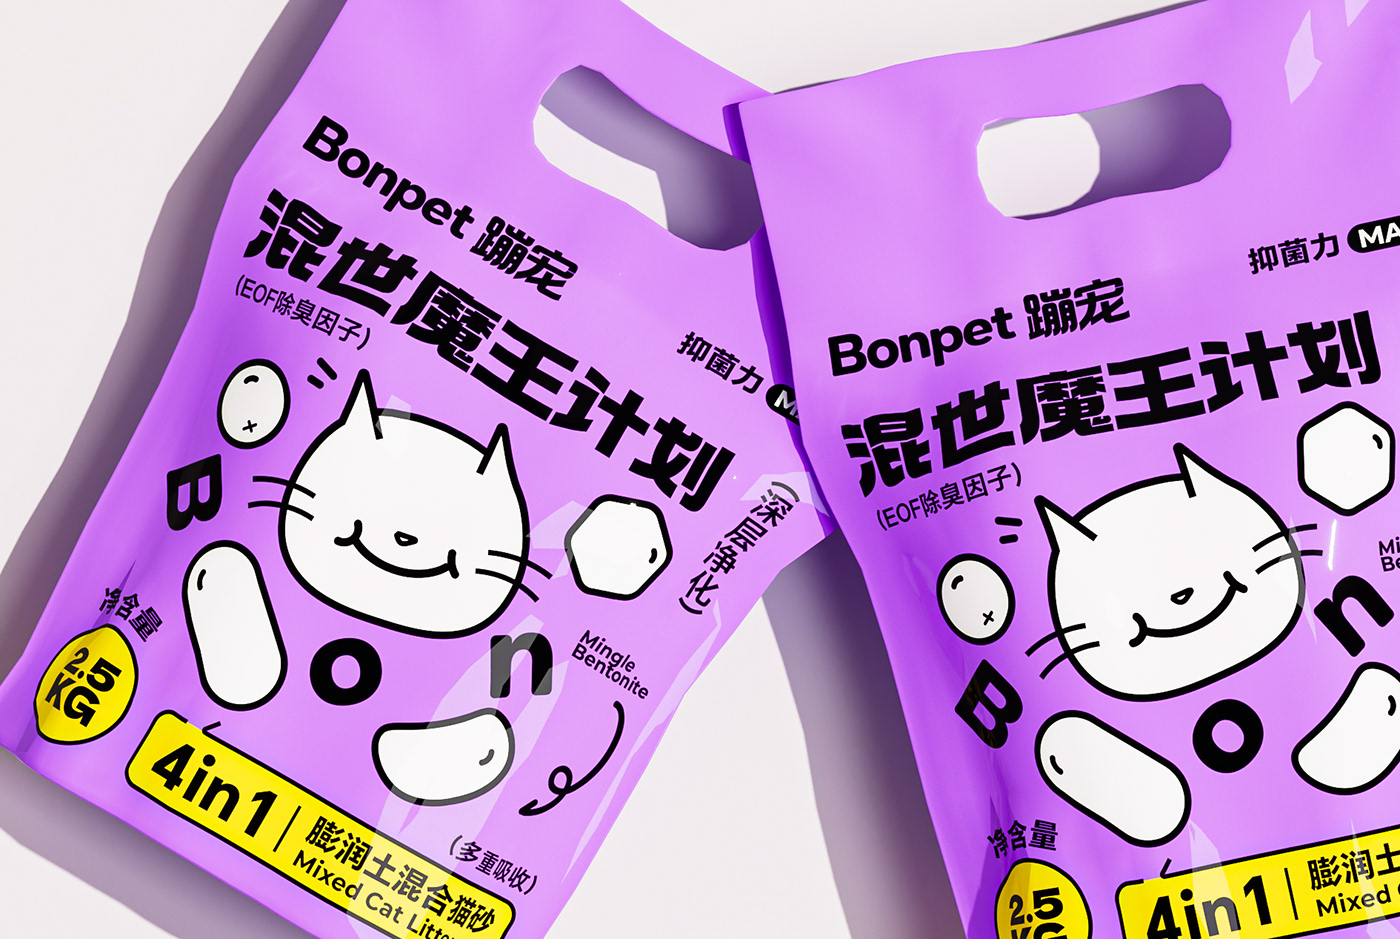 猫砂包装设计 宠物包装设计 宠物包装 猫砂 包装设计 Cat Litter Packaging 宠物品牌设计 宠物用品包装设计 猫砂包装 猫砂品牌设计